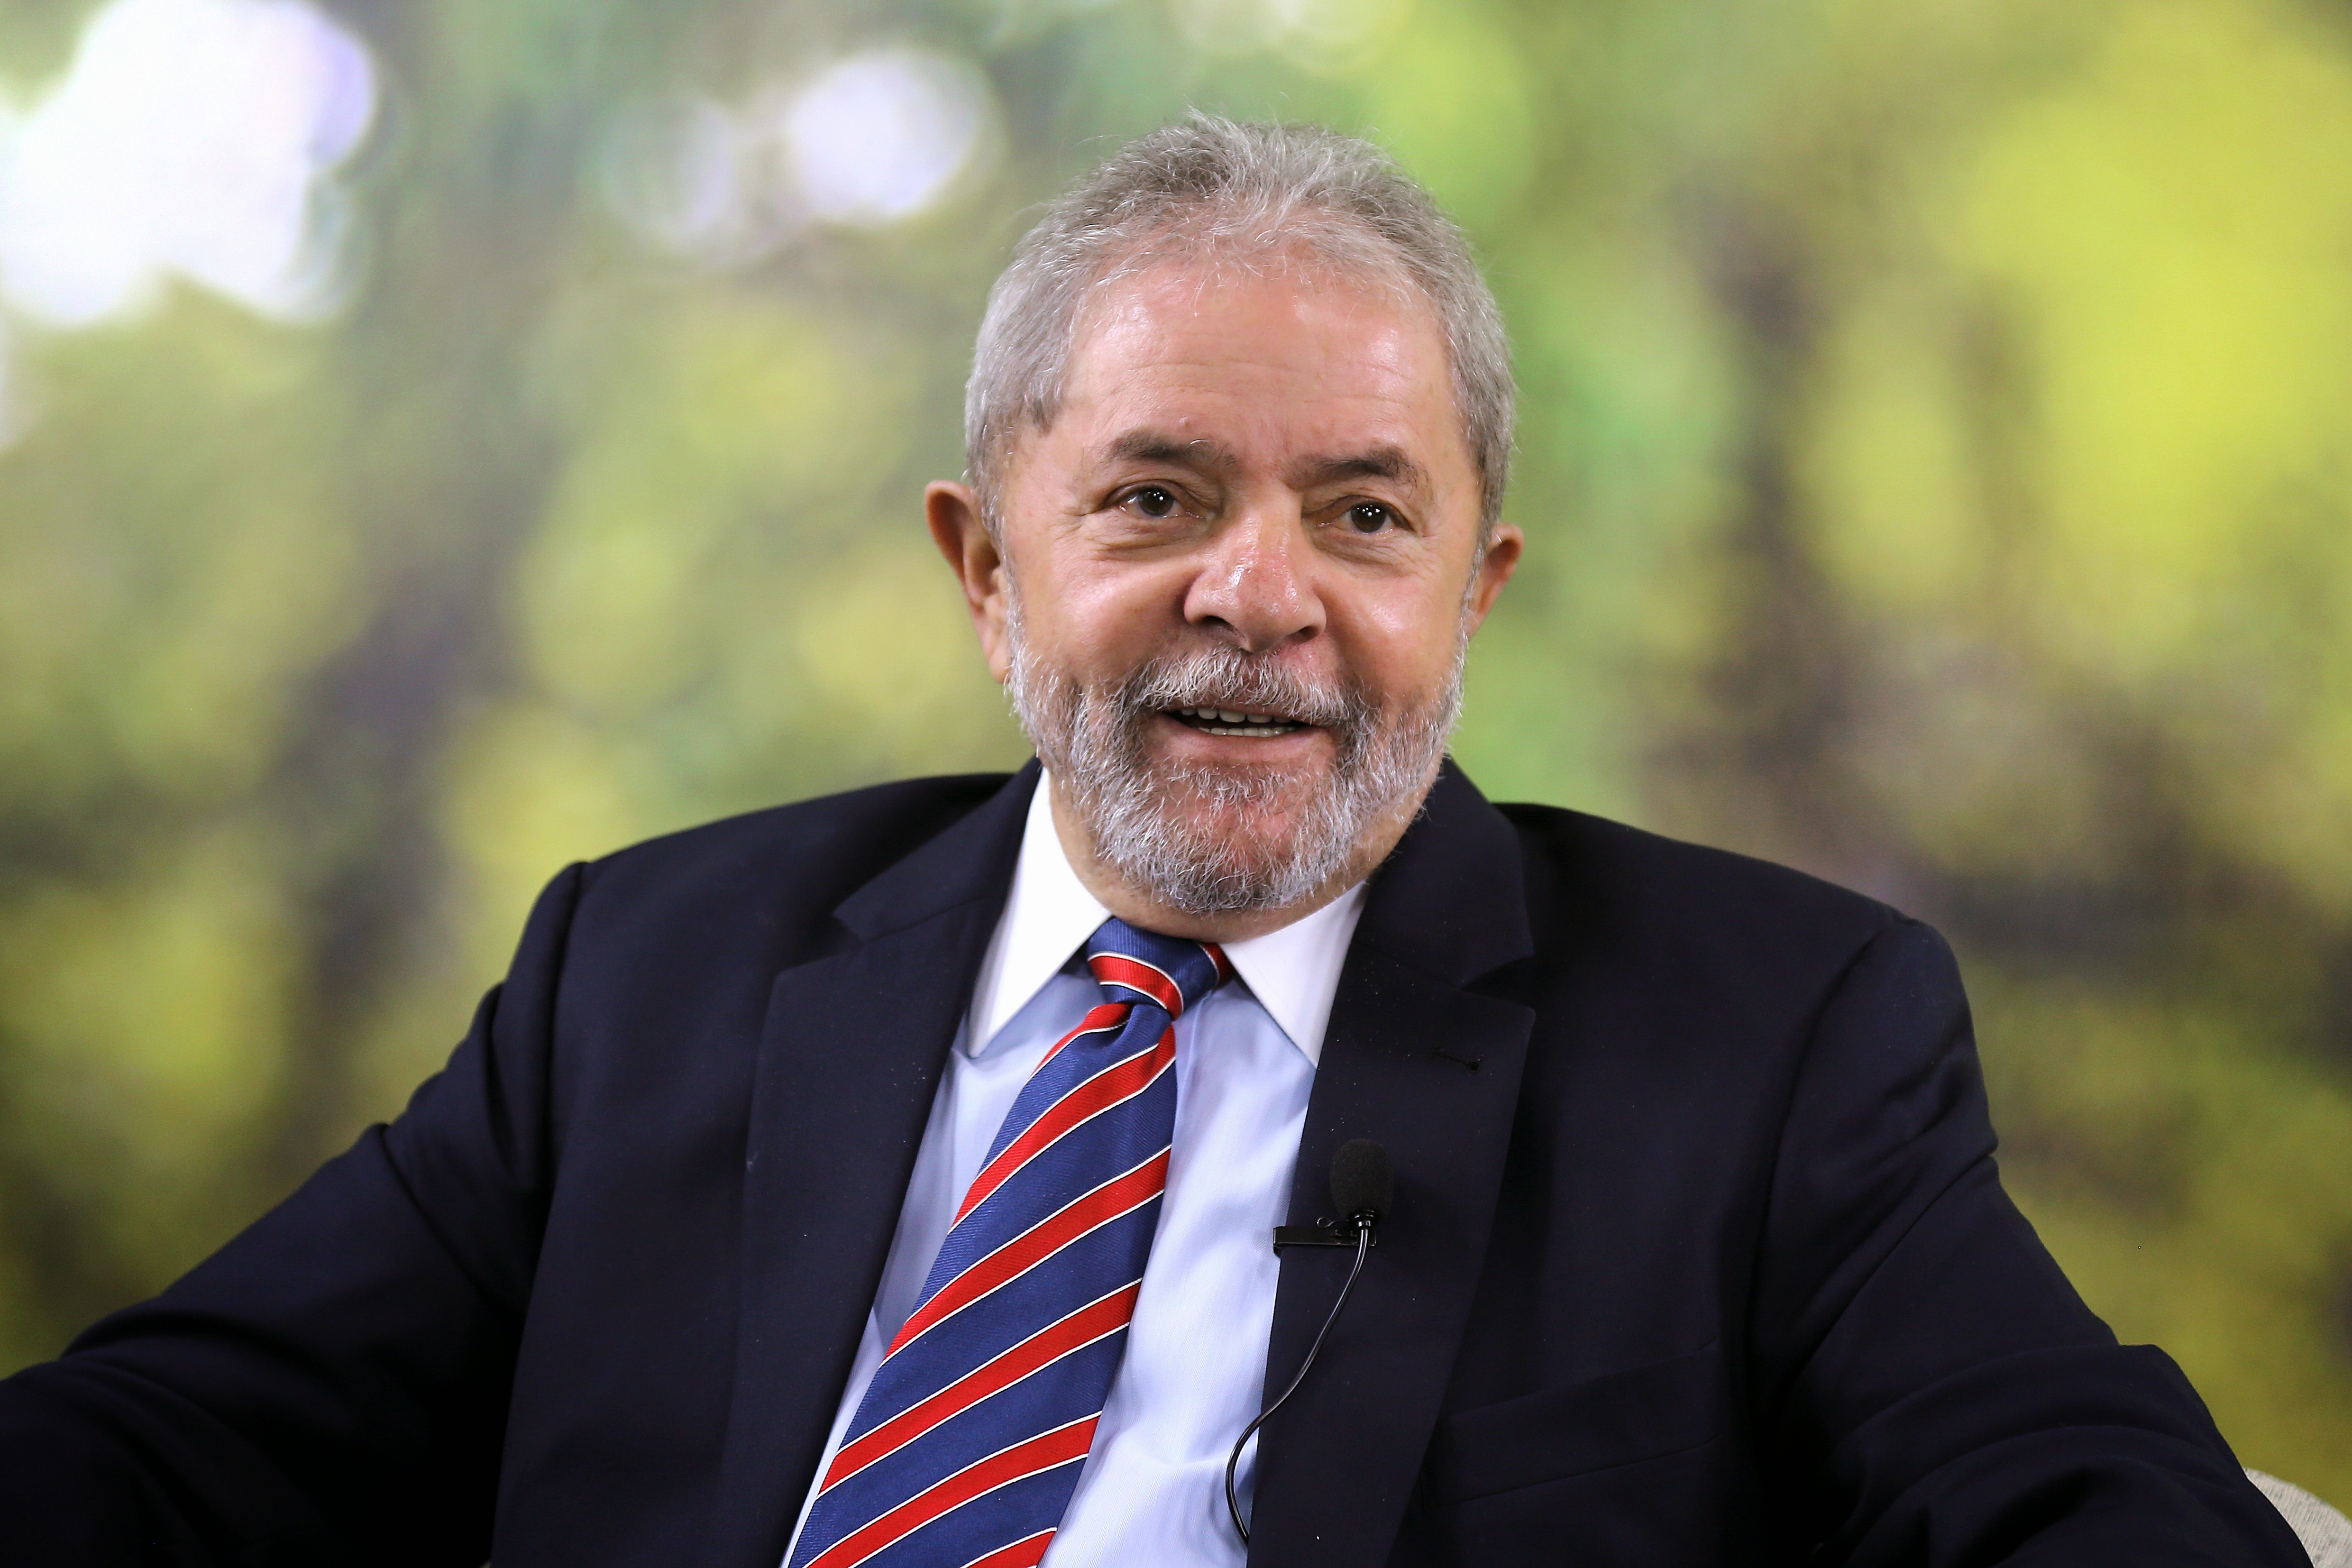  Escrevente relata que elaborou minuta de venda do sítio de Atibaia para o ex-presidente Lula.